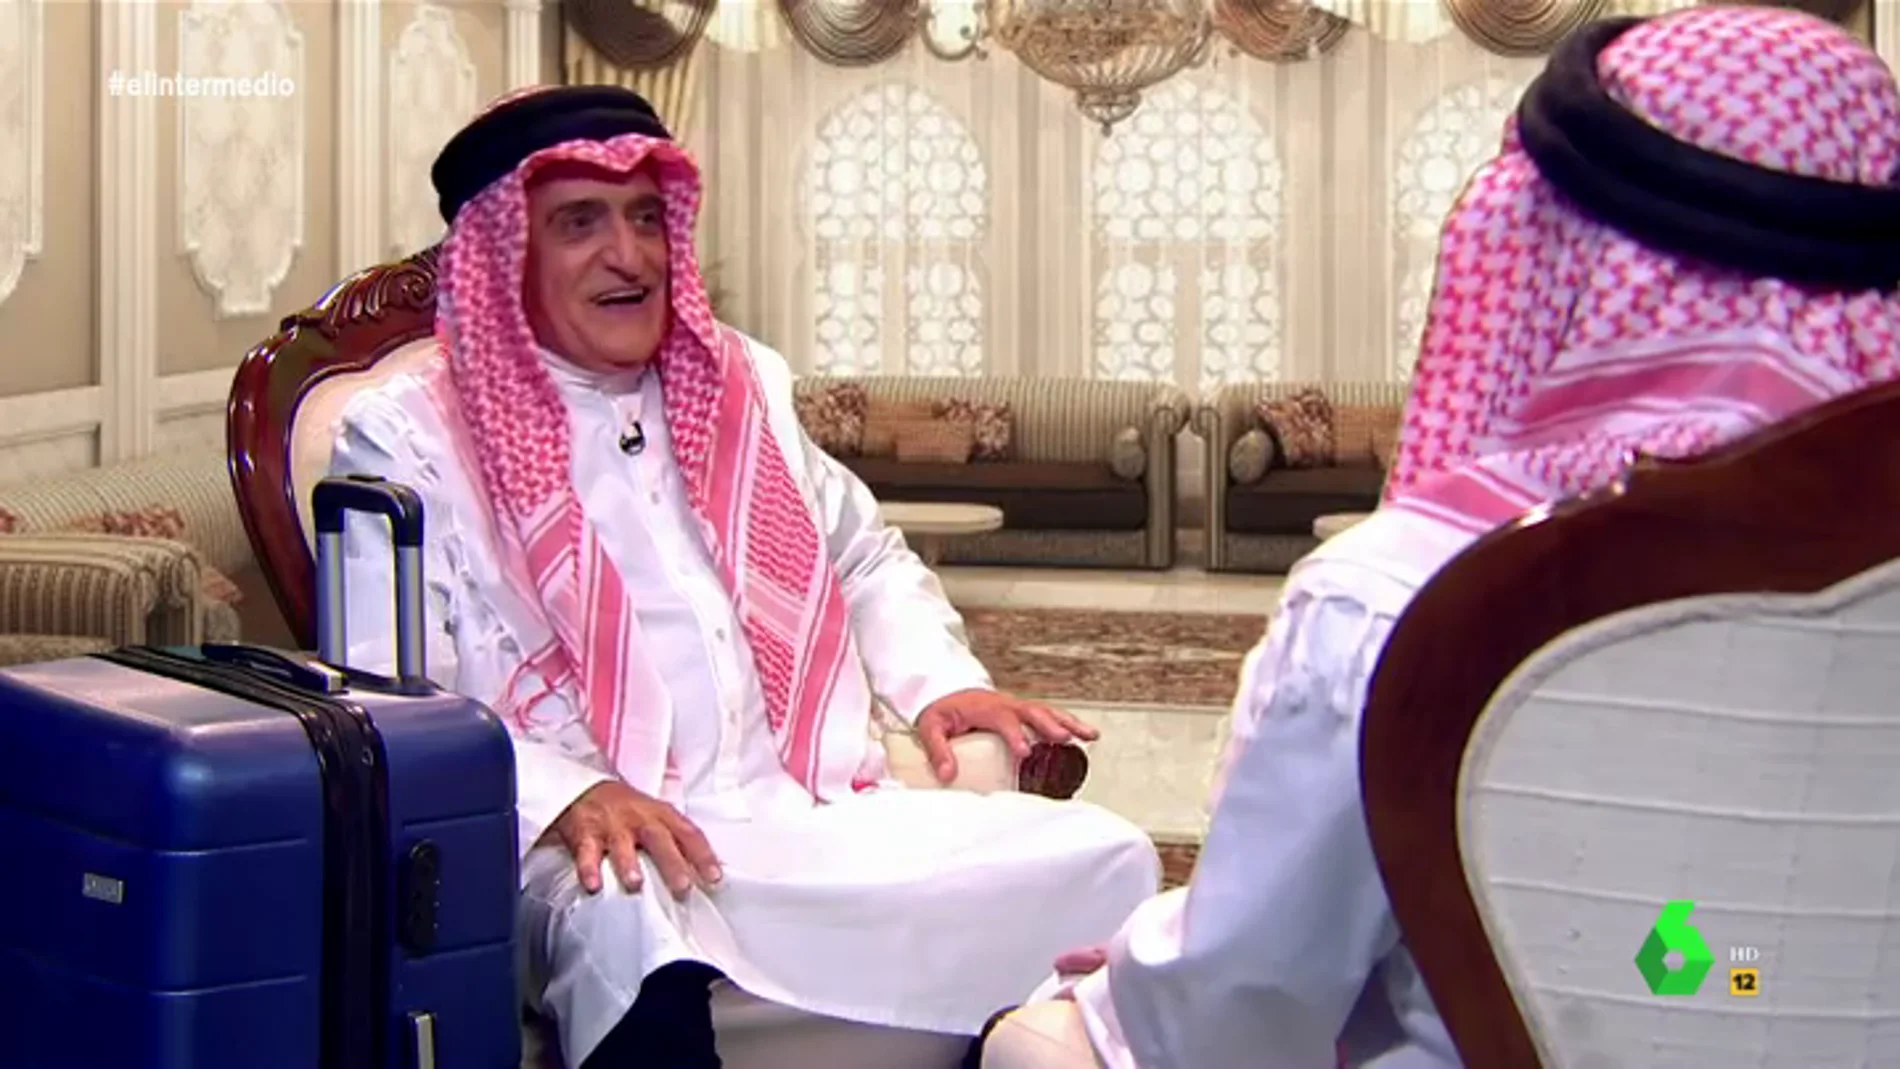 La intima 'conversación' entre Wyoming y el rey Juan Carlos en Abu Dhabi: "¿Qué es eso de trabajar?"